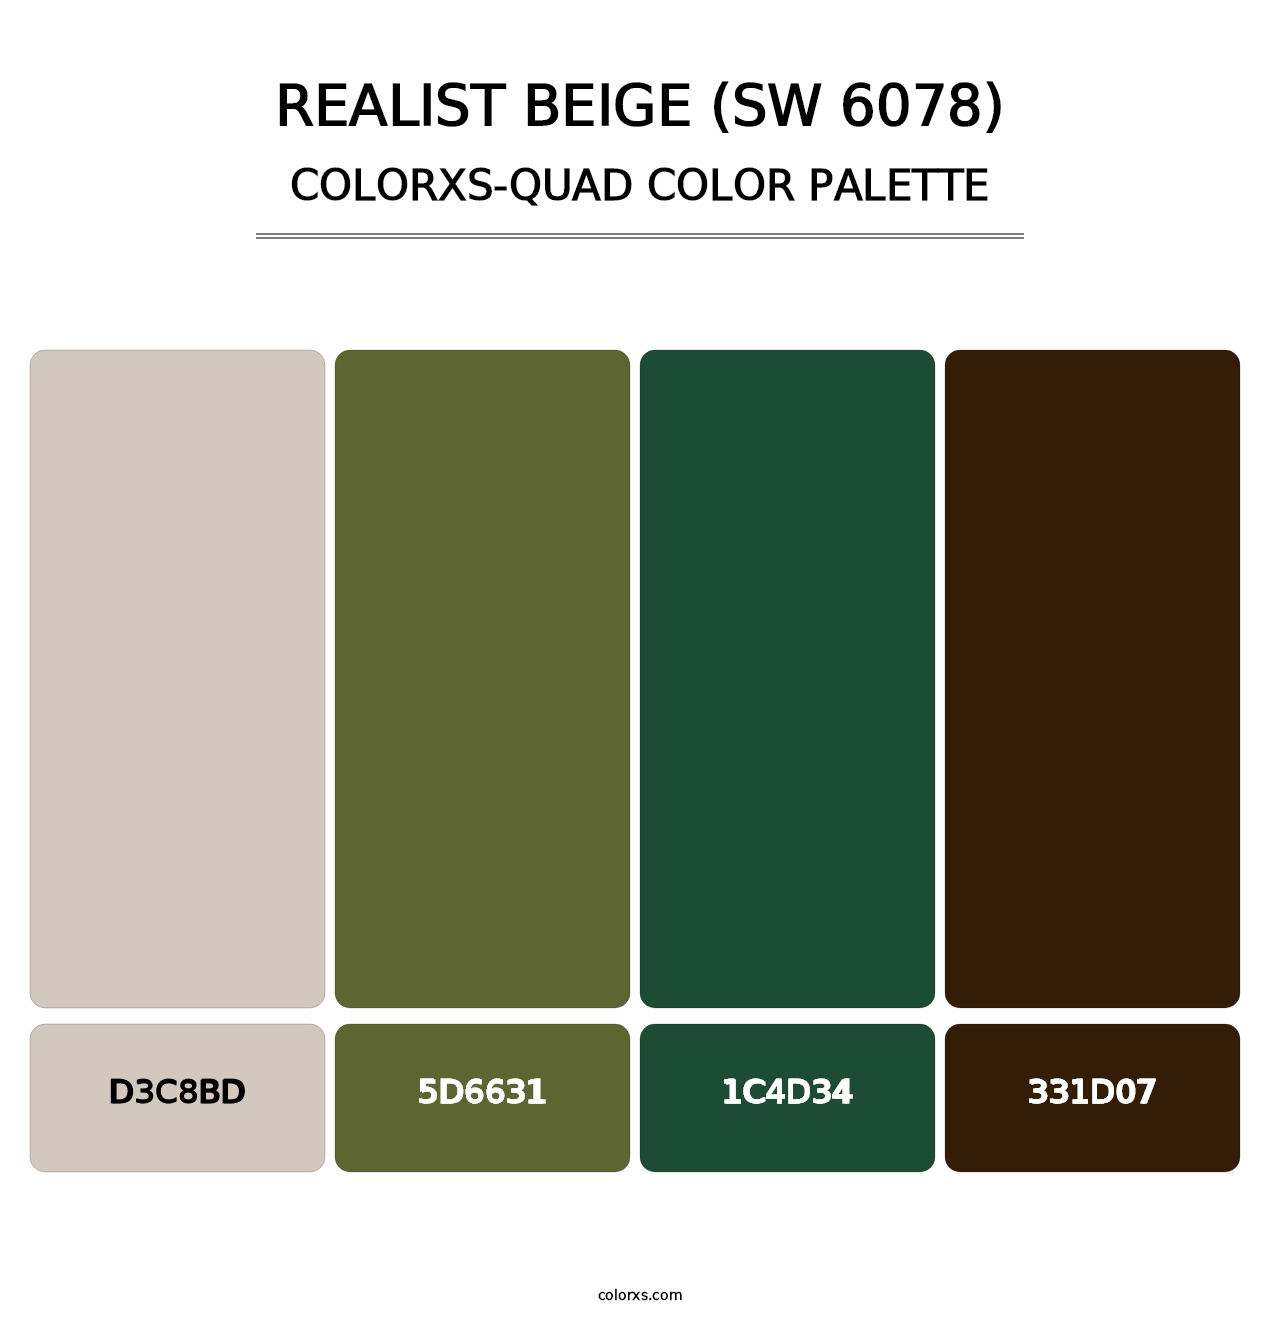 Realist Beige (SW 6078) - Colorxs Quad Palette